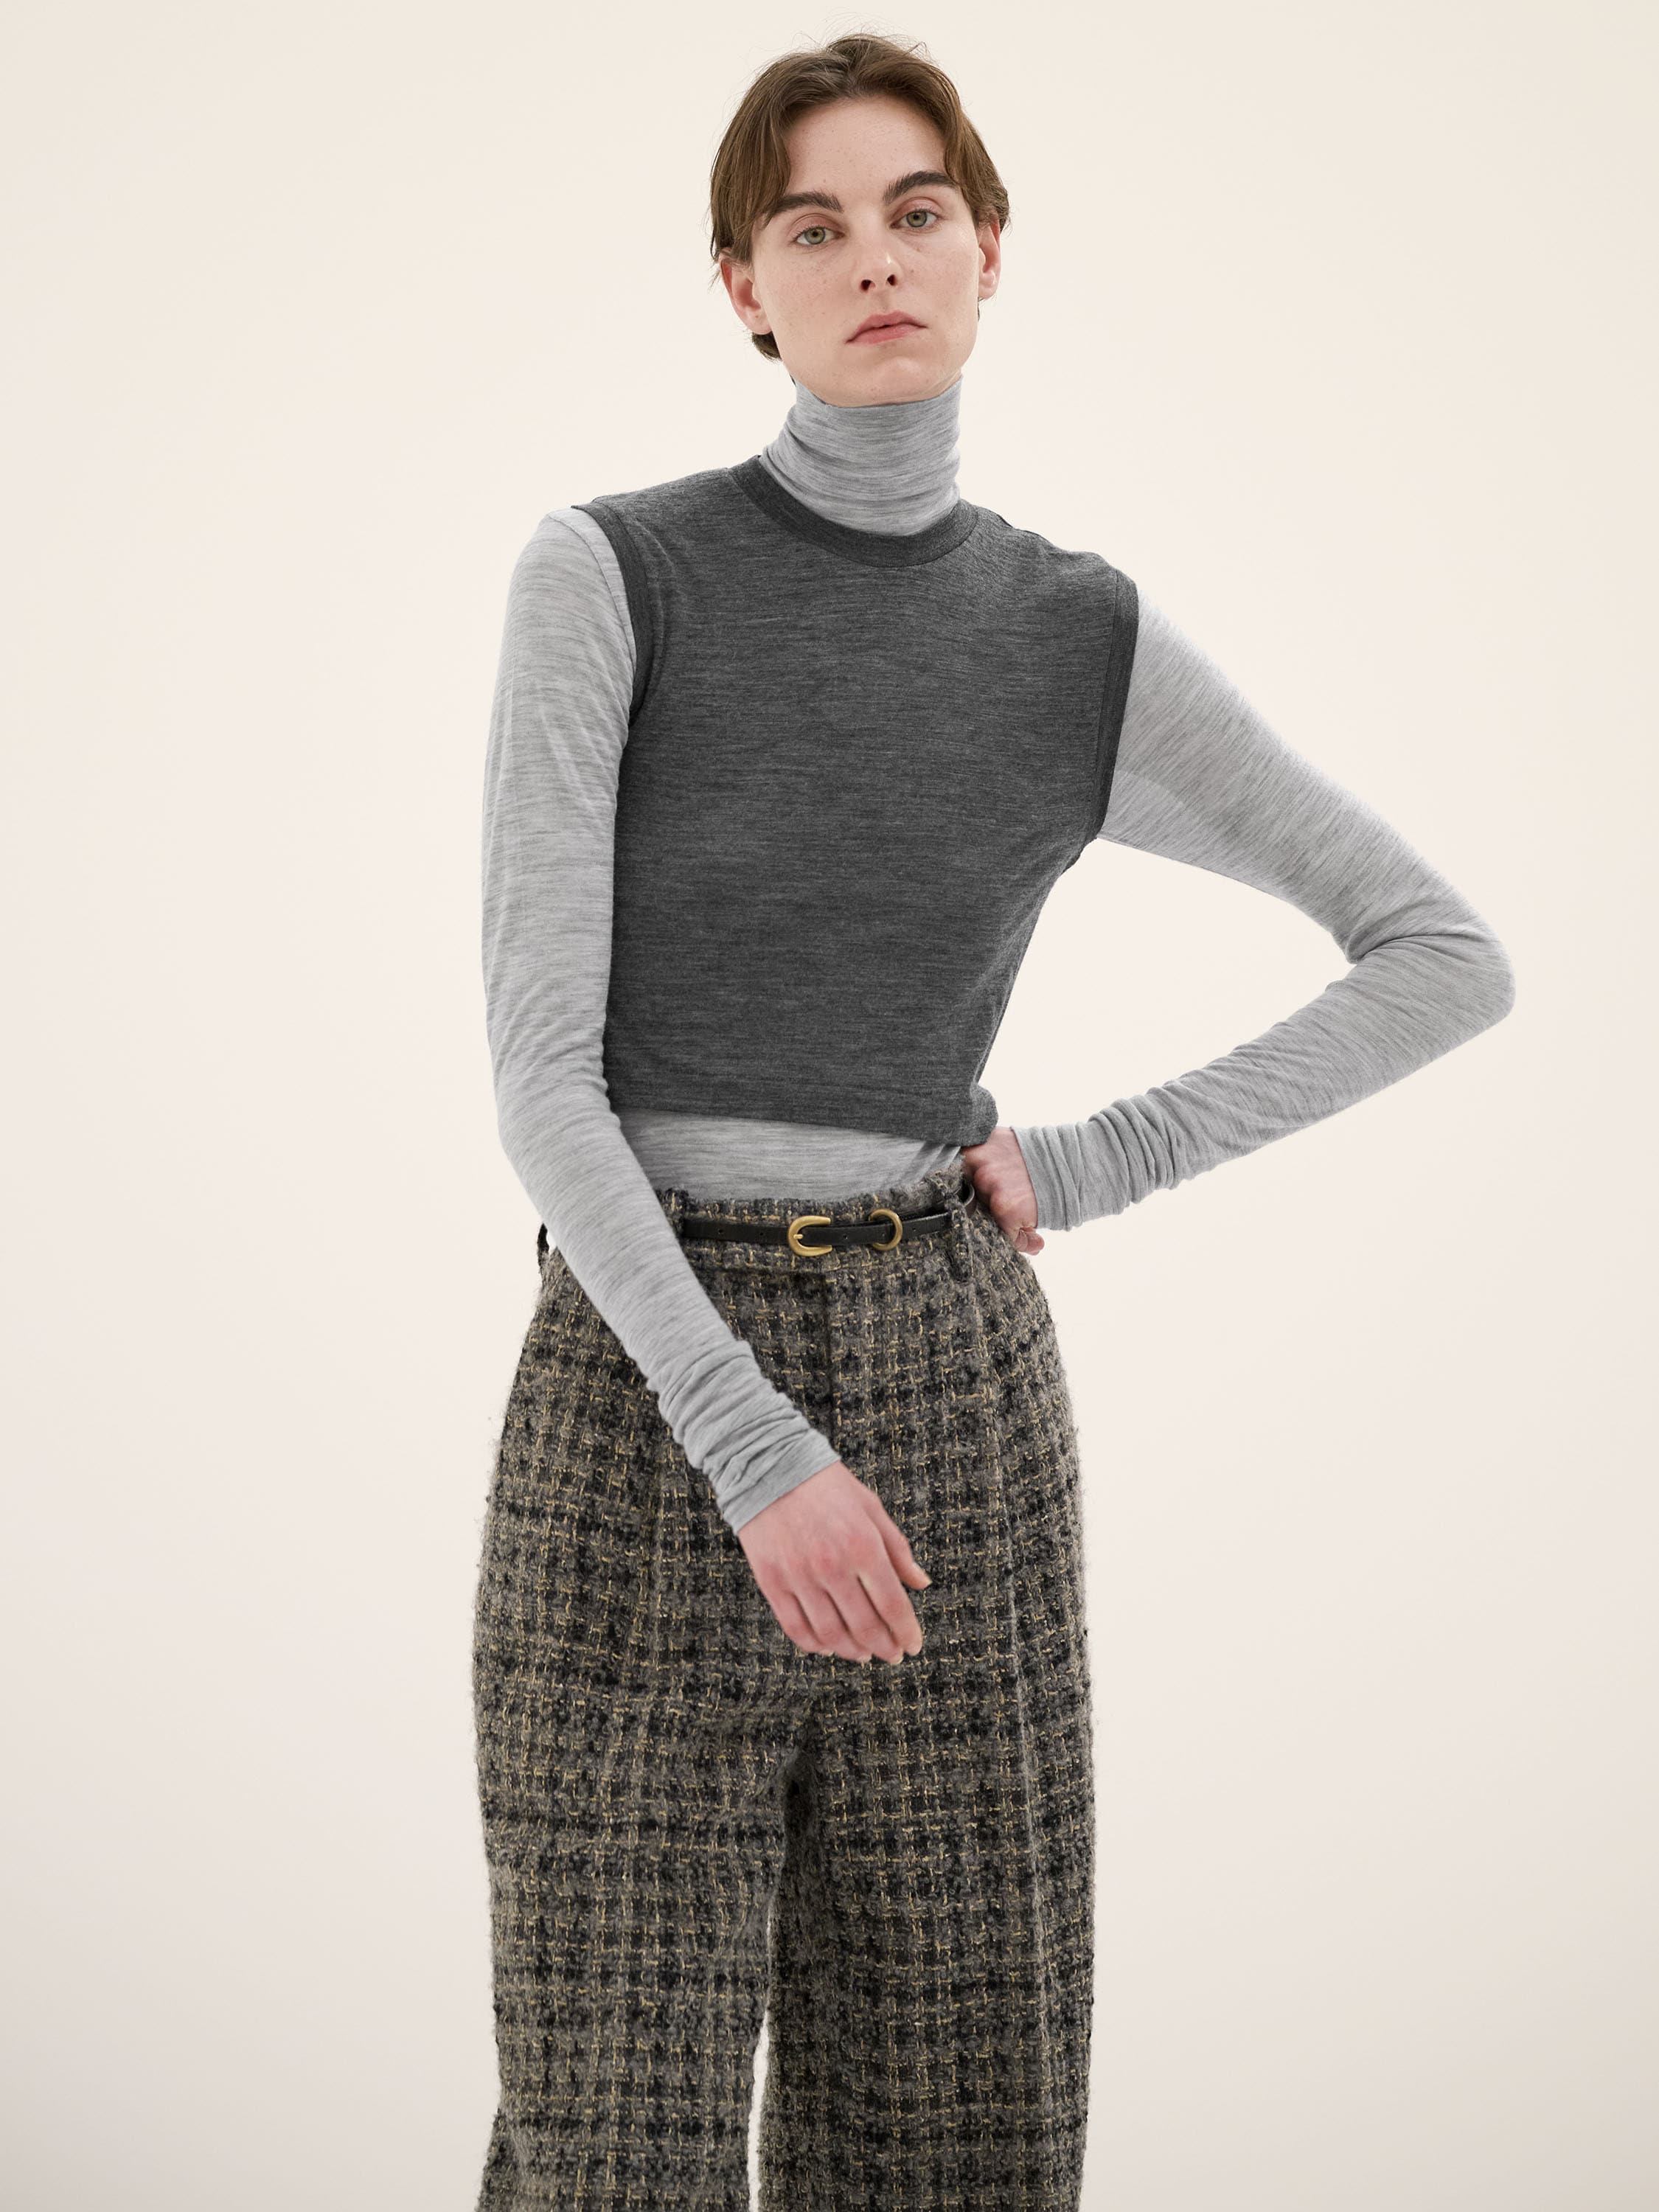 Super Soft Wool Sheer Jersey Short Sleeveless - Charcoal